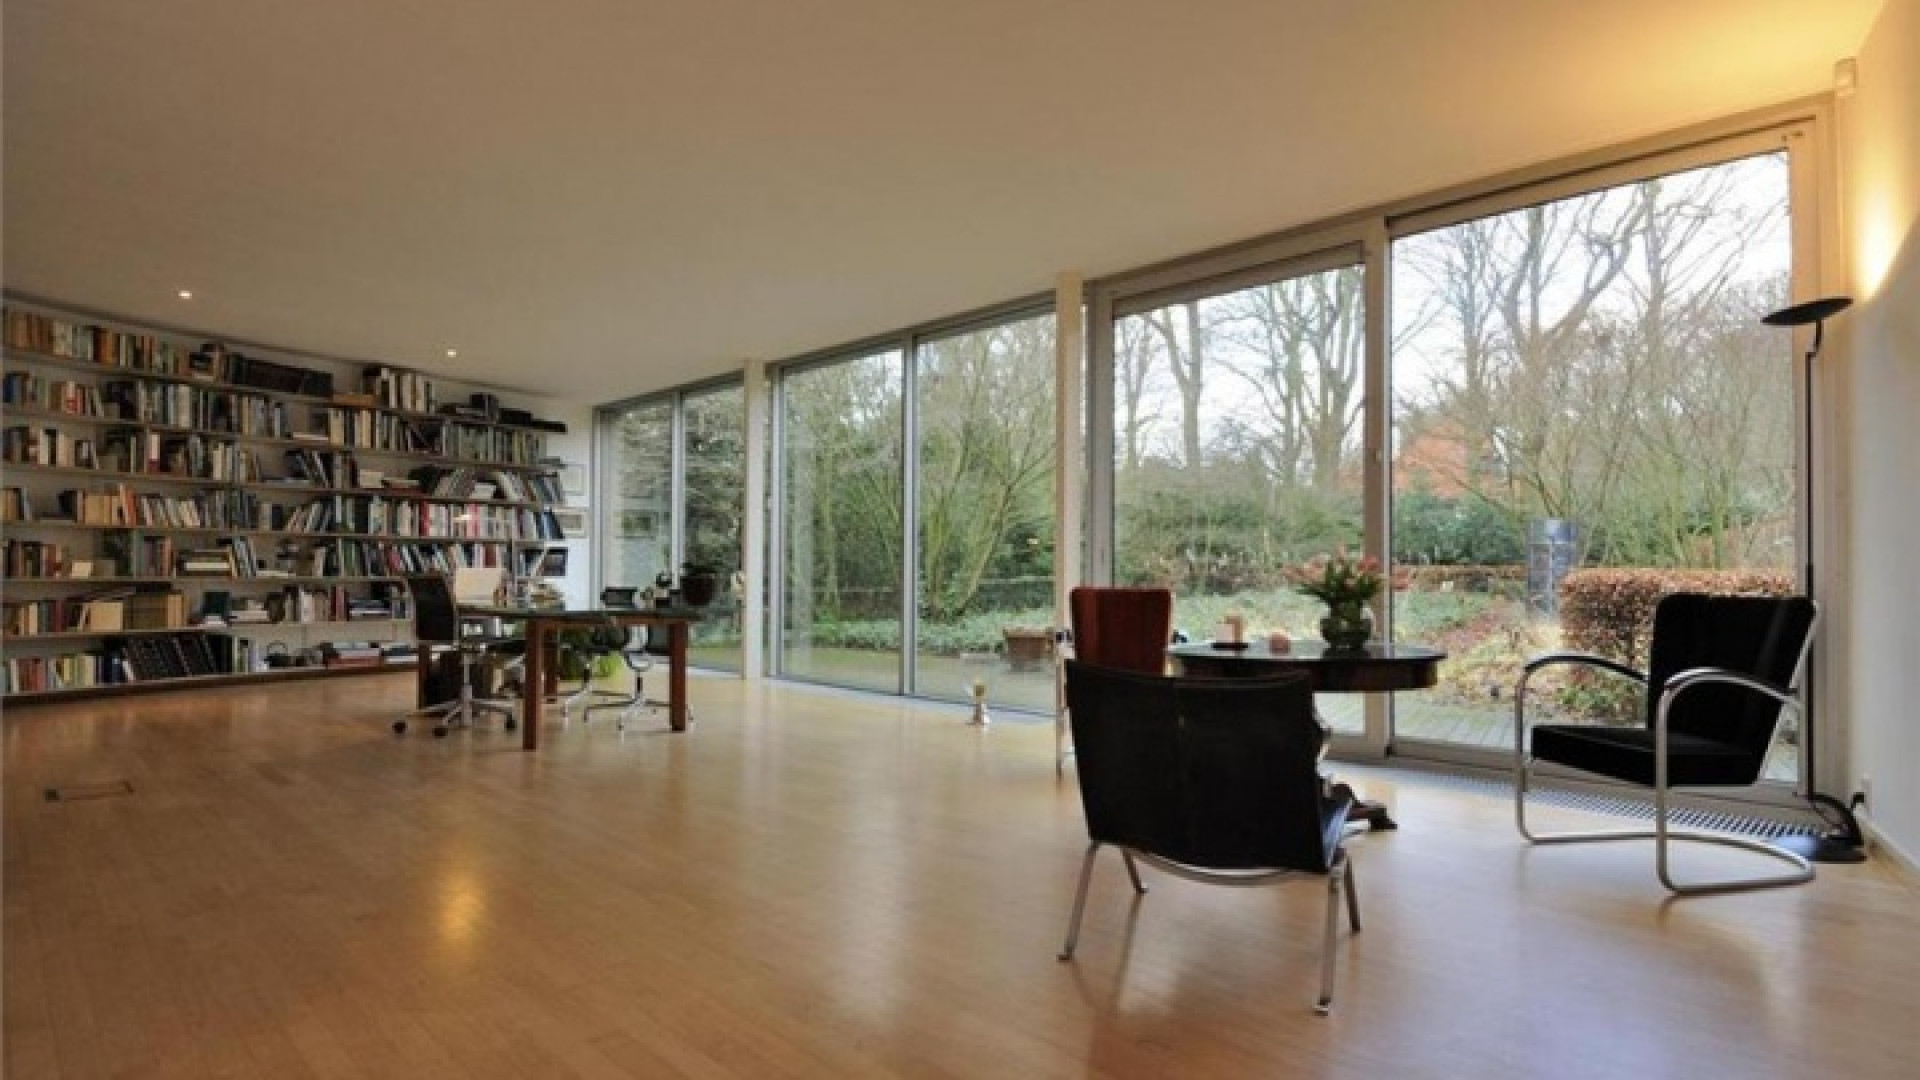 Wassenaarse villa van Neelie Smit Kroes eindelijk na jaren verkocht. Zie foto's